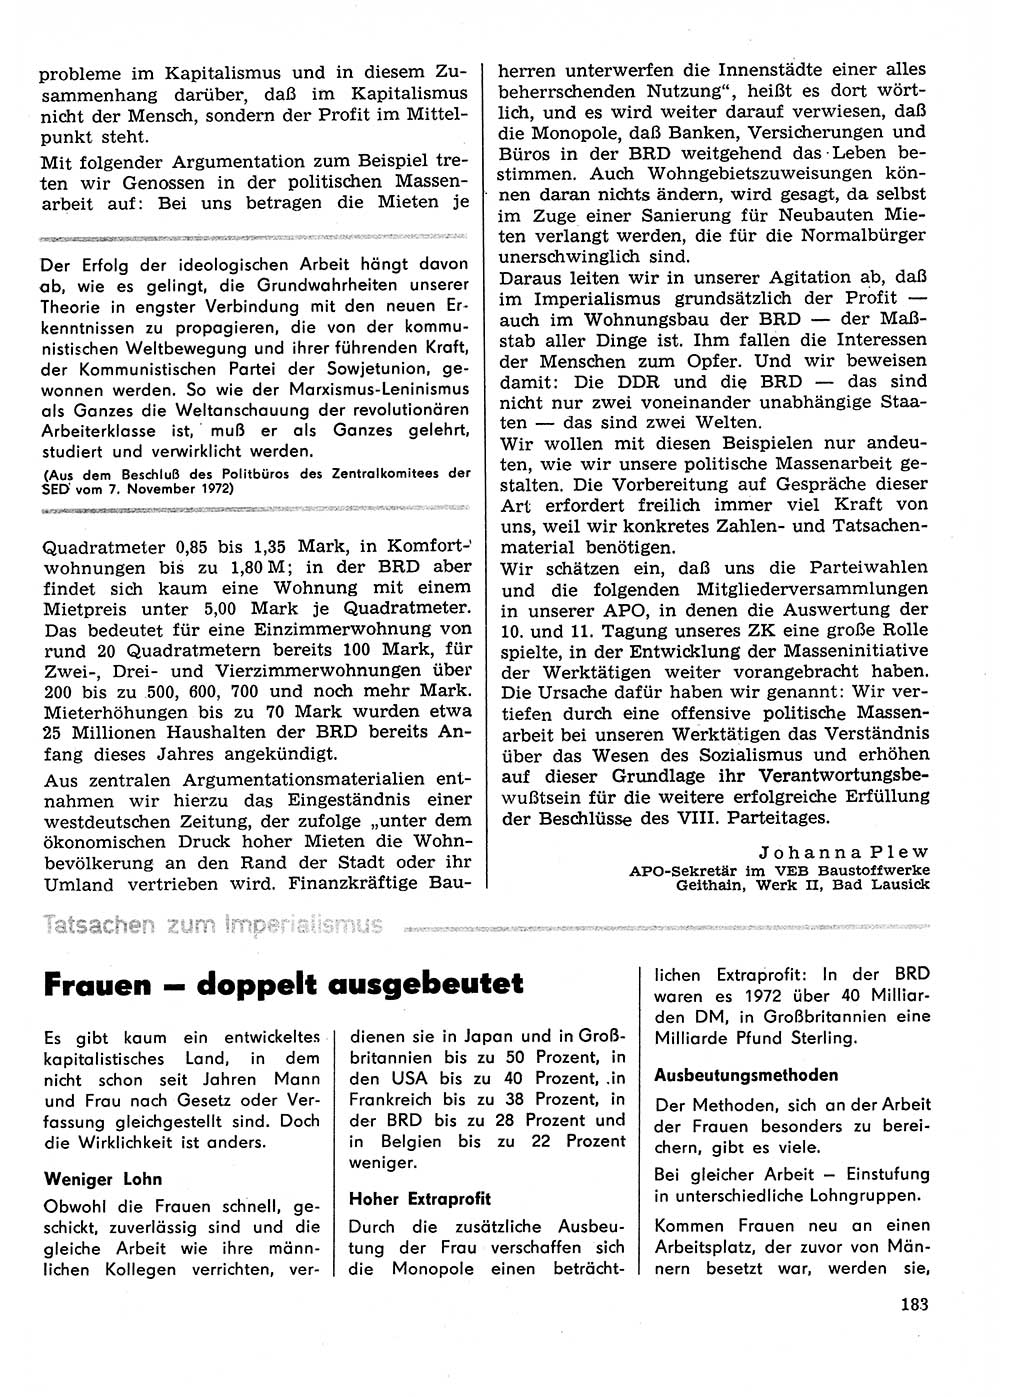 Neuer Weg (NW), Organ des Zentralkomitees (ZK) der SED (Sozialistische Einheitspartei Deutschlands) für Fragen des Parteilebens, 29. Jahrgang [Deutsche Demokratische Republik (DDR)] 1974, Seite 183 (NW ZK SED DDR 1974, S. 183)